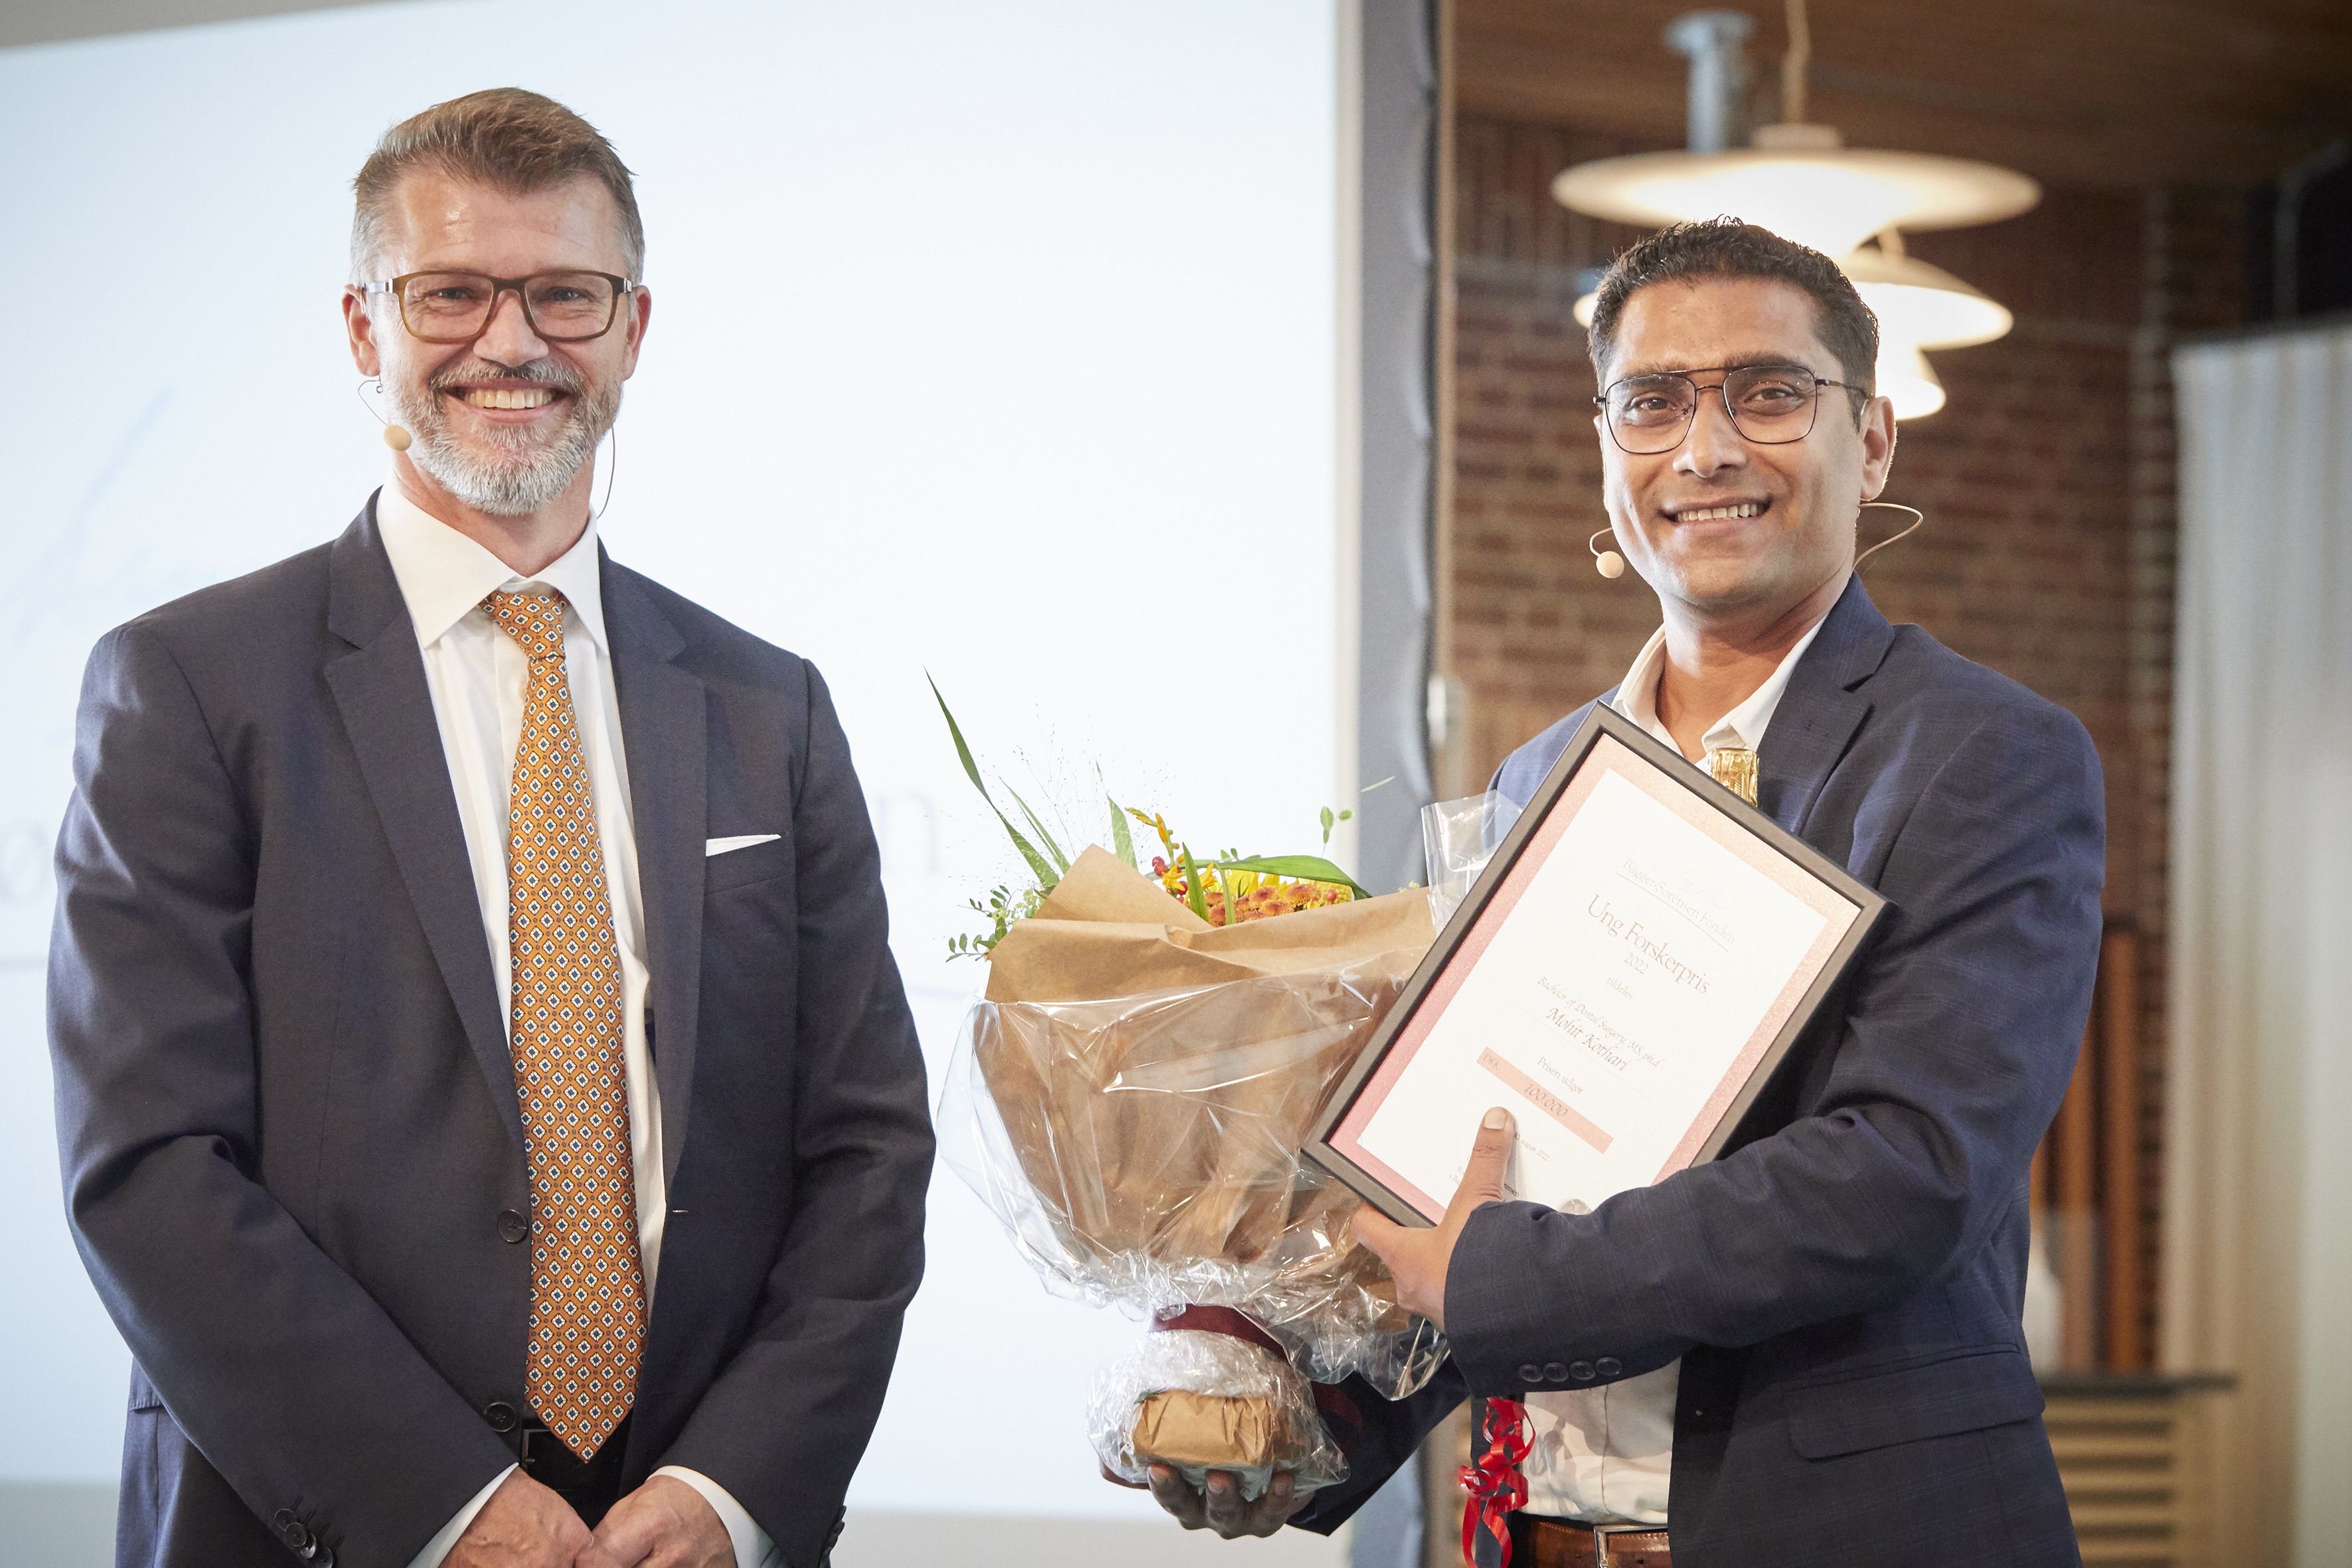 På billedet ses formand for fondens bestyrelse Claus Bagger-Sørensen (til venstre) og vinder af Ung Forskerprisen Mohit Kothari (til højre).